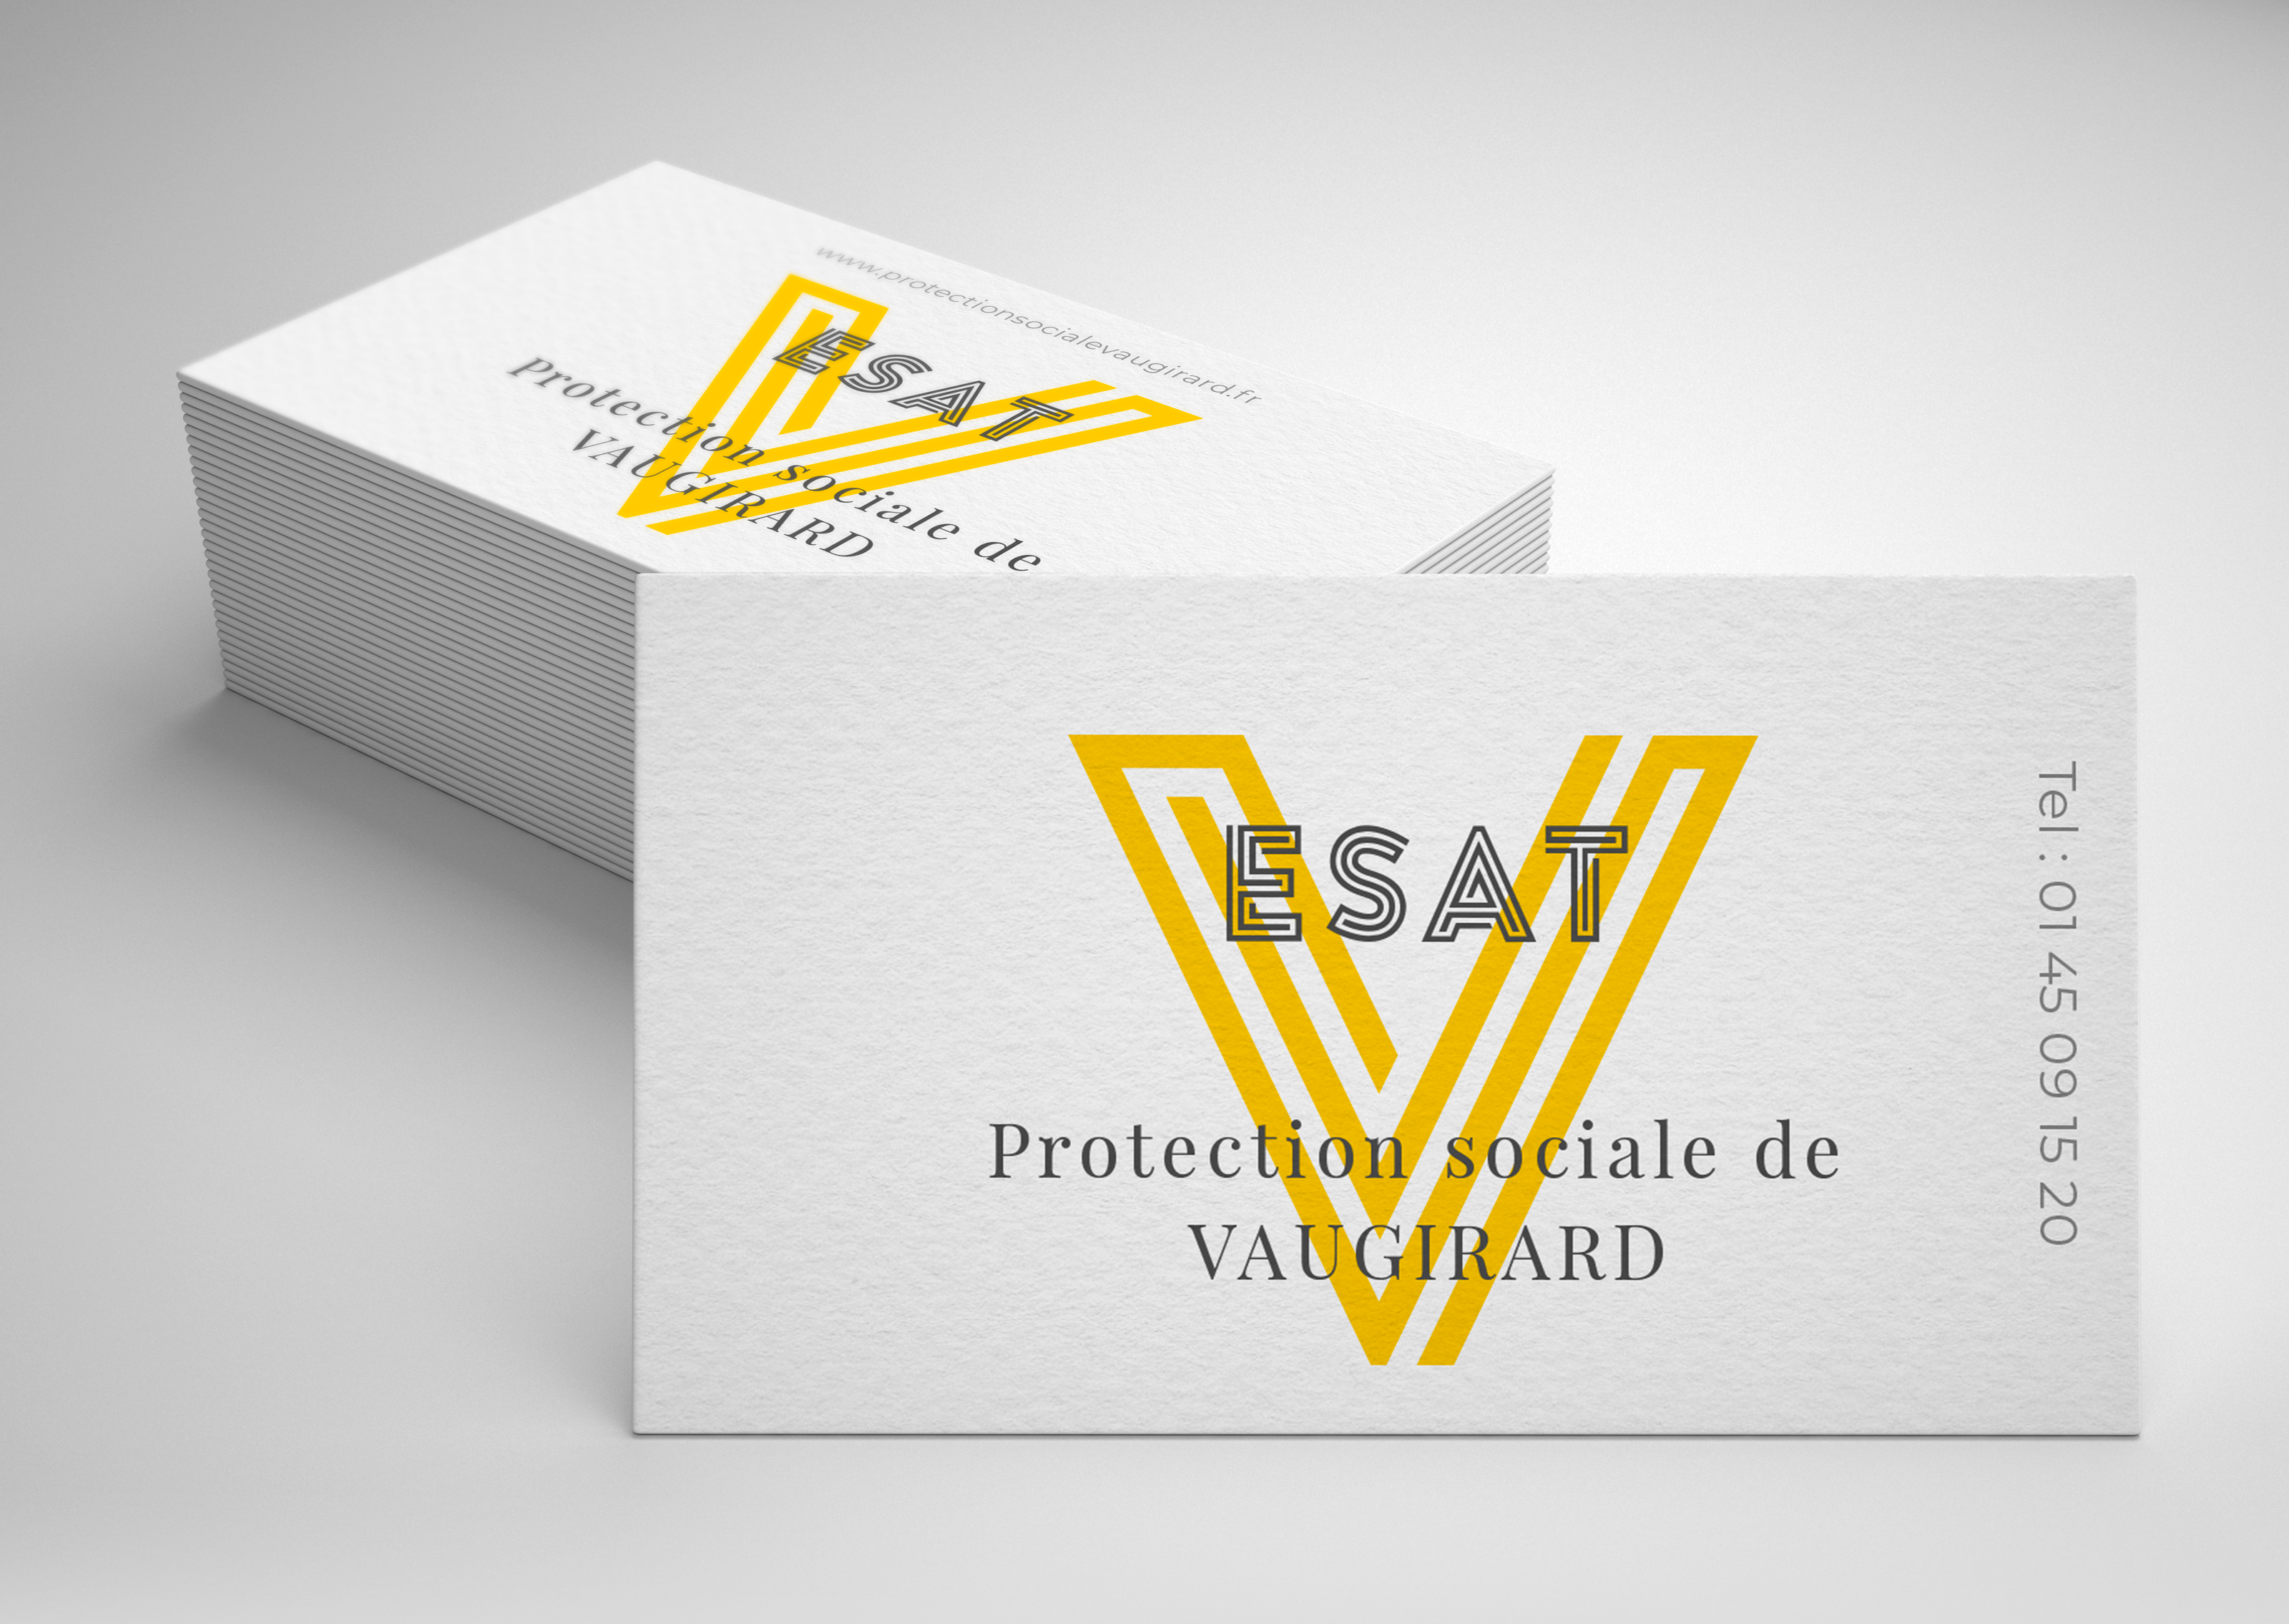 Protection sociale de VAUGIRARD